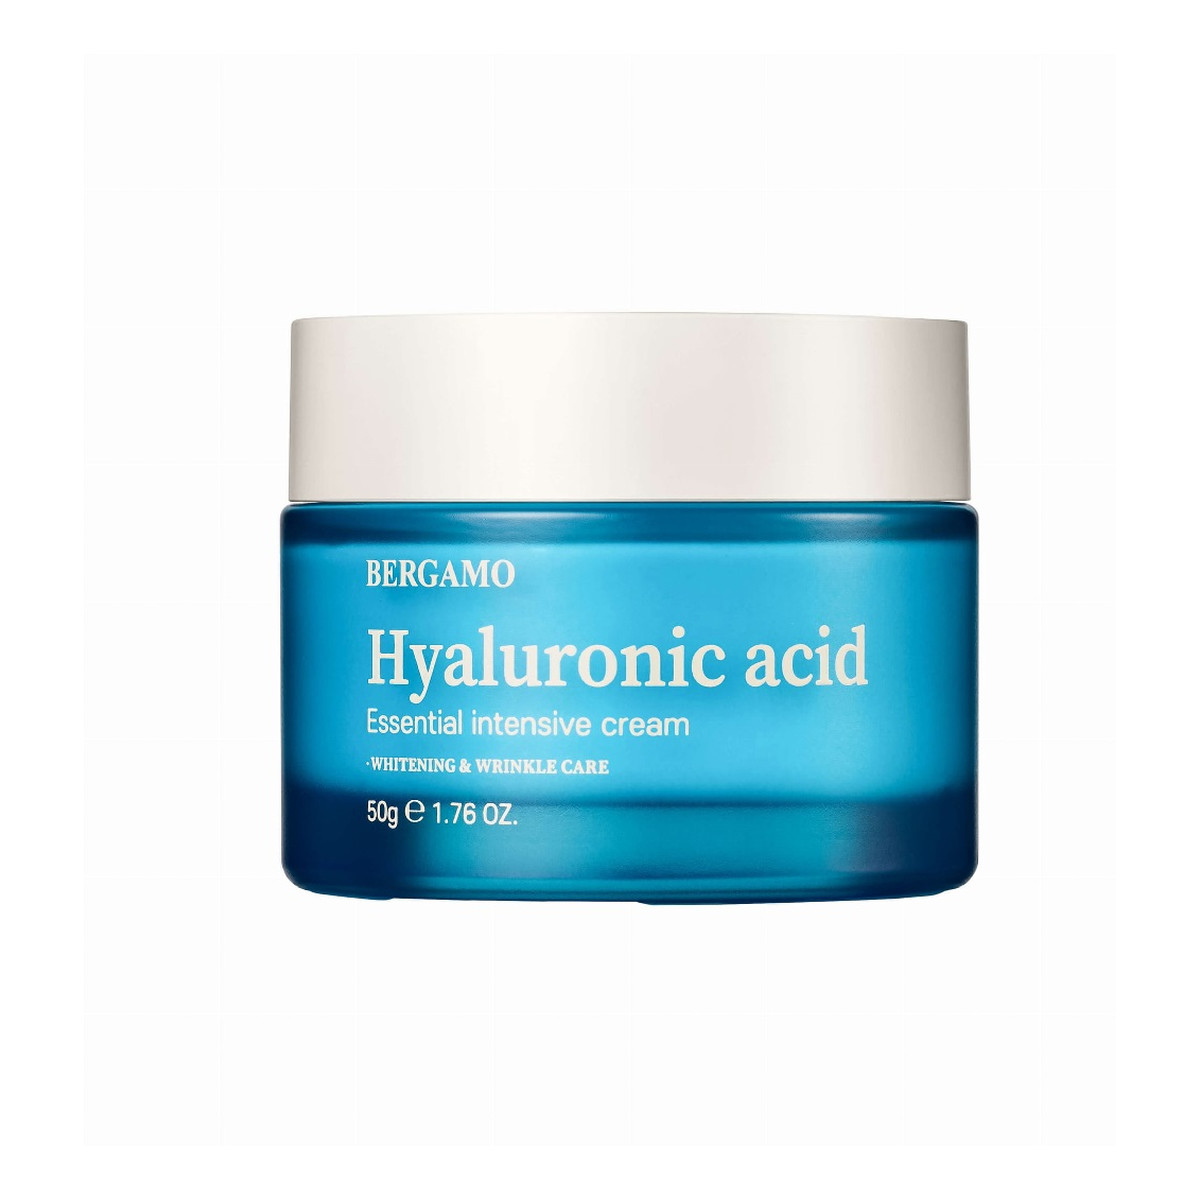 Bergamo Hyaluronic Acid Essential Intensive Cream nawilżający Krem do twarzy z kwasem hialuronowym 50g